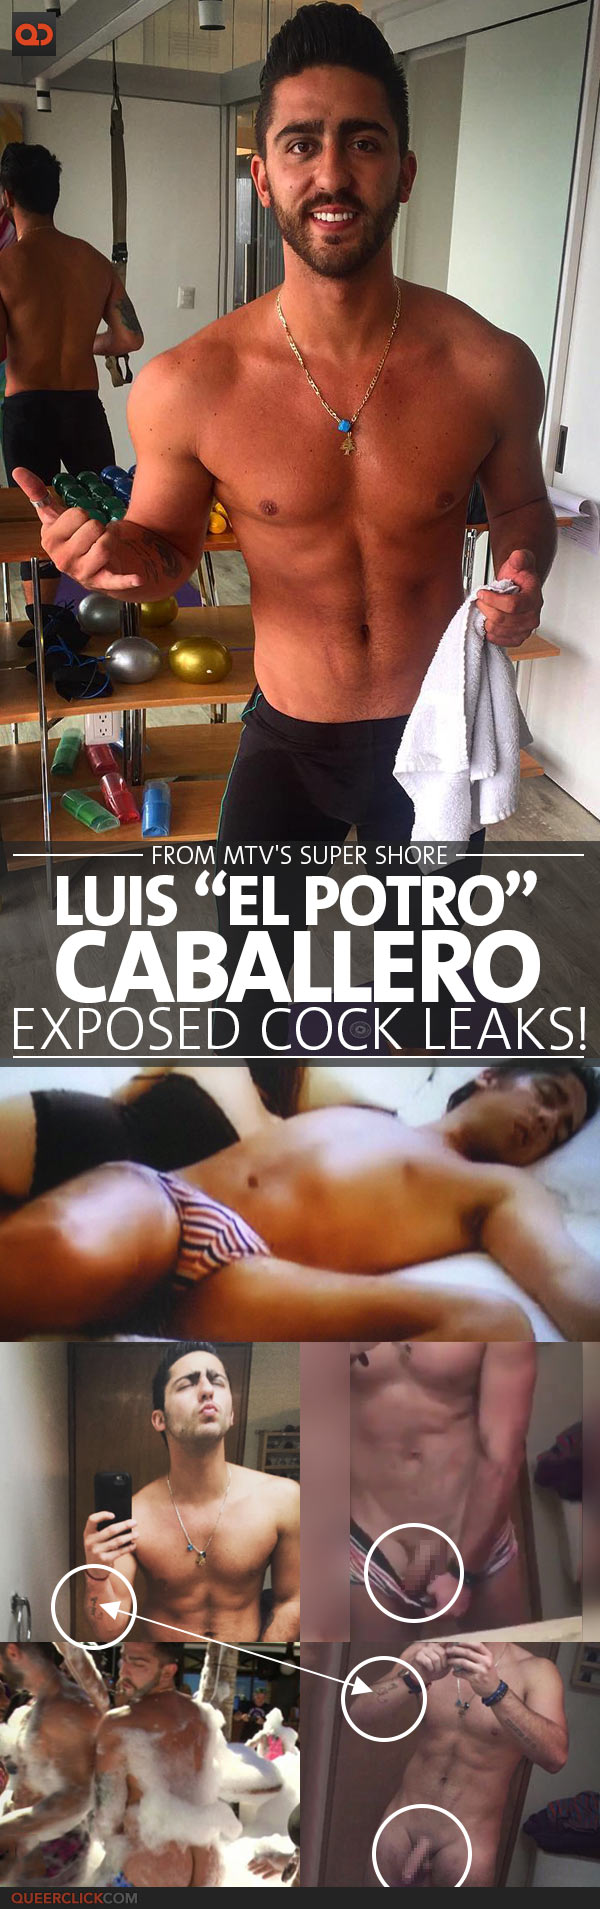 Luis â€œPotroâ€ Caballero, From MTV's Super Shore, Exposed Cock Leaks! -  QueerClick